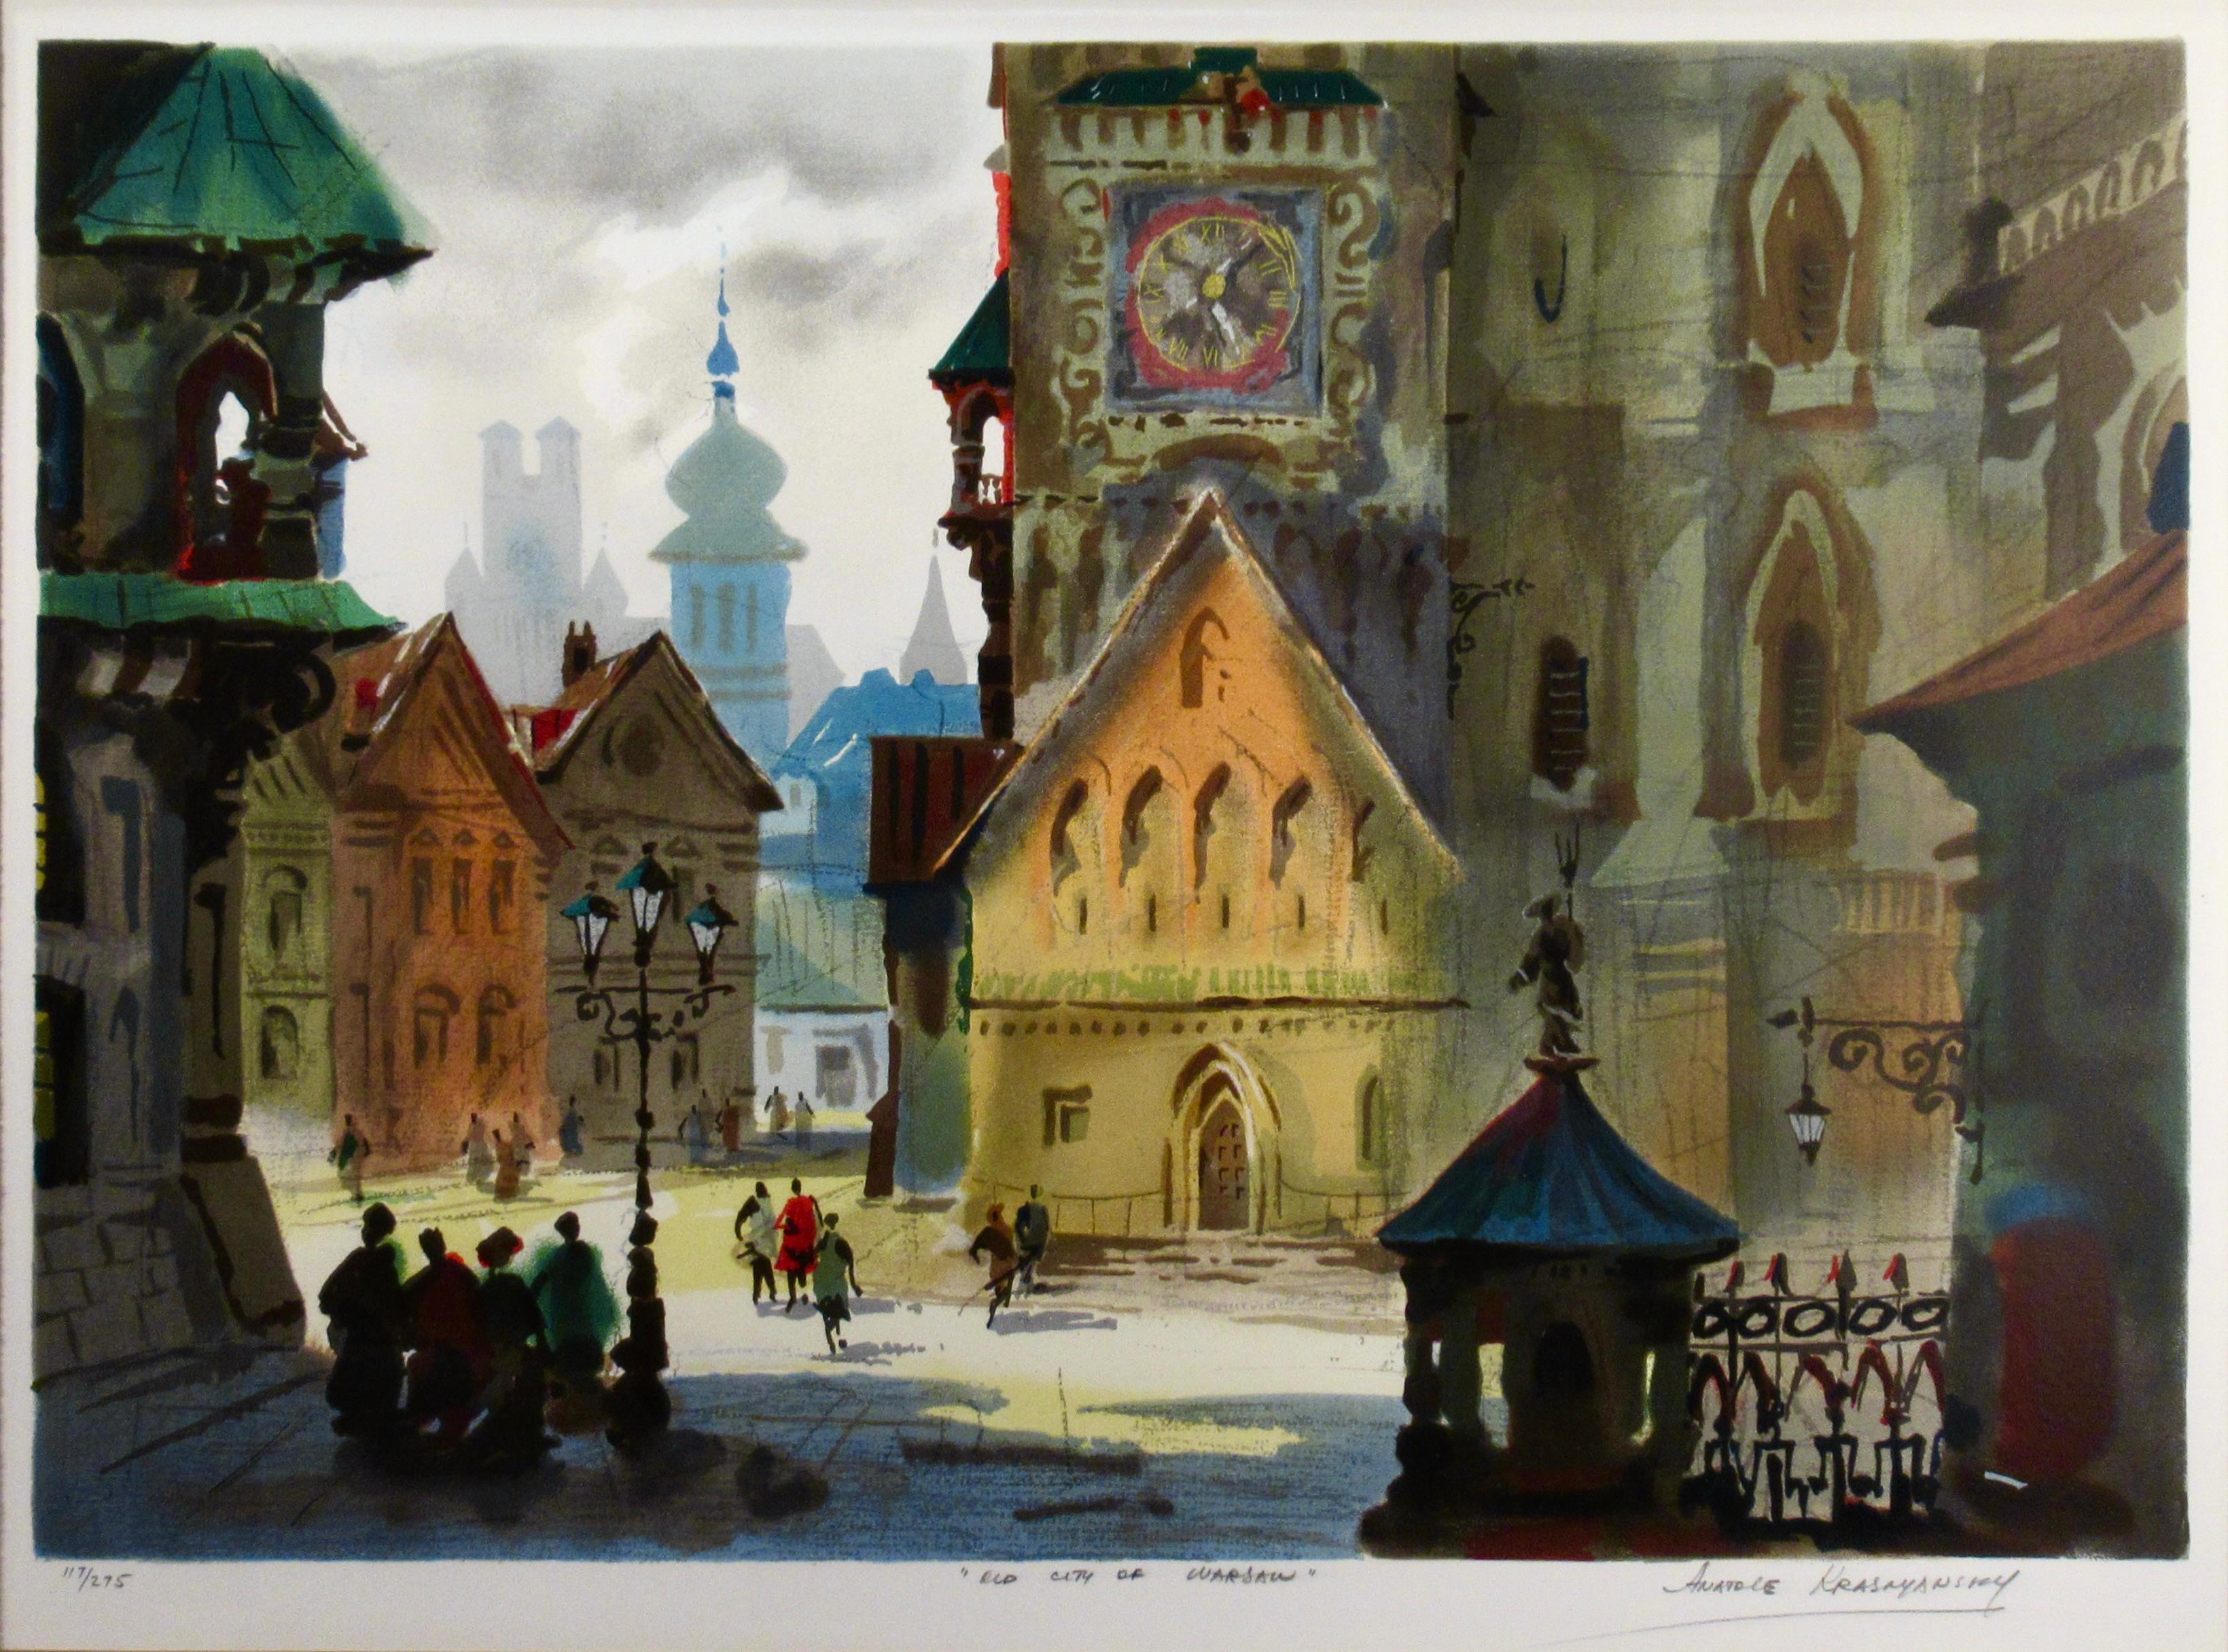 Old City of Warsaw - Print by Anatole Krasnyansky